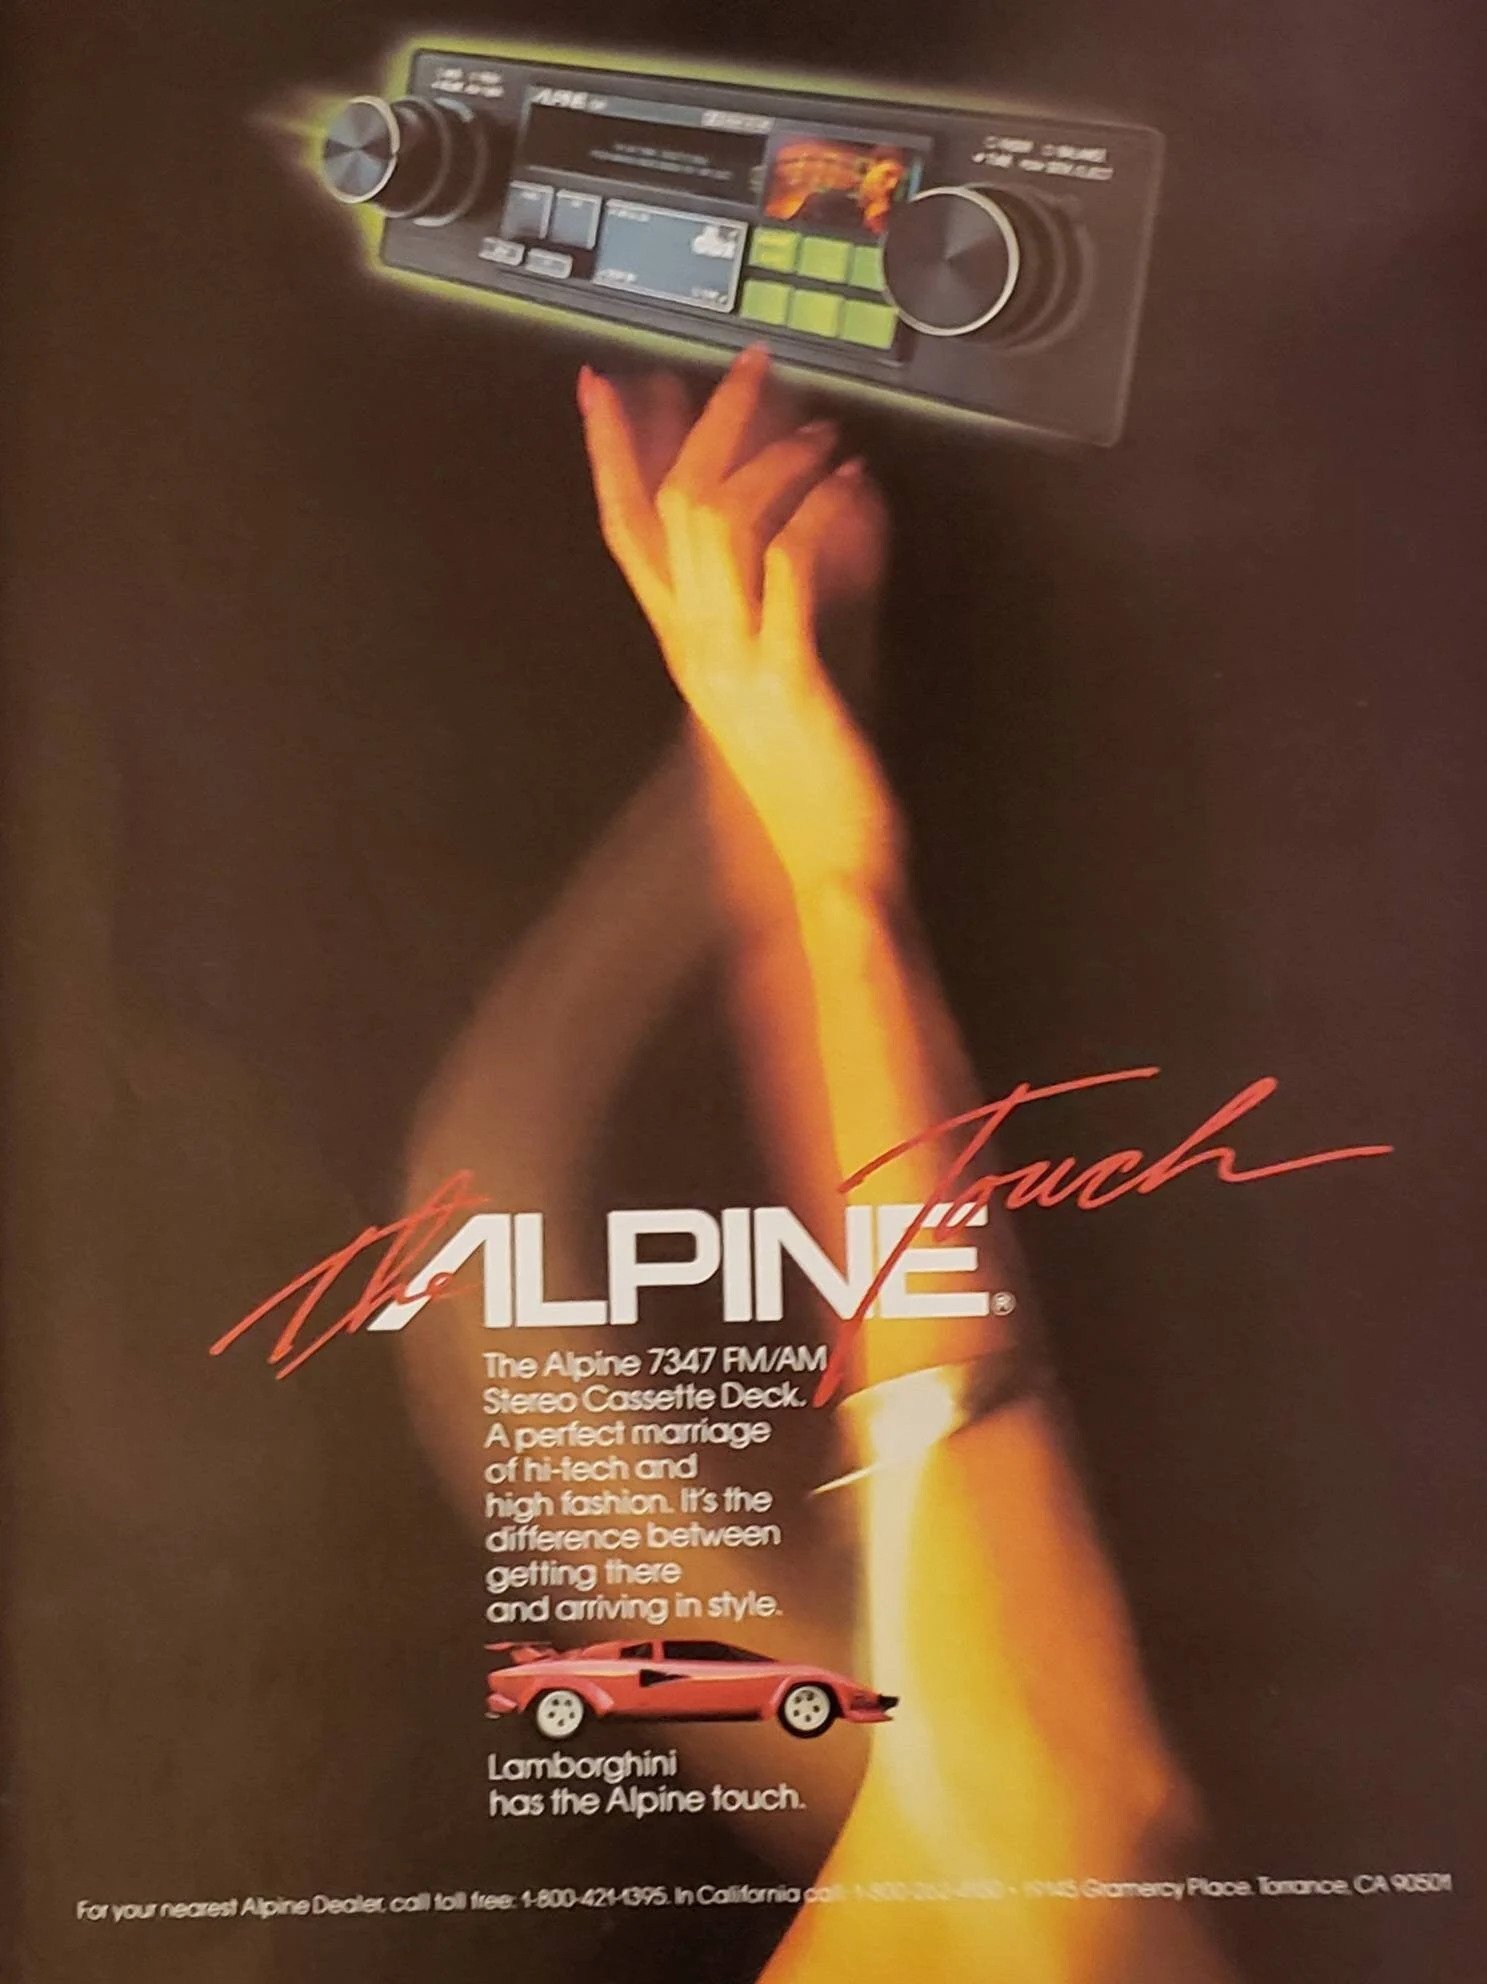 Lamborghini med The Alpine Touch. Herlig reklame fra 1983.